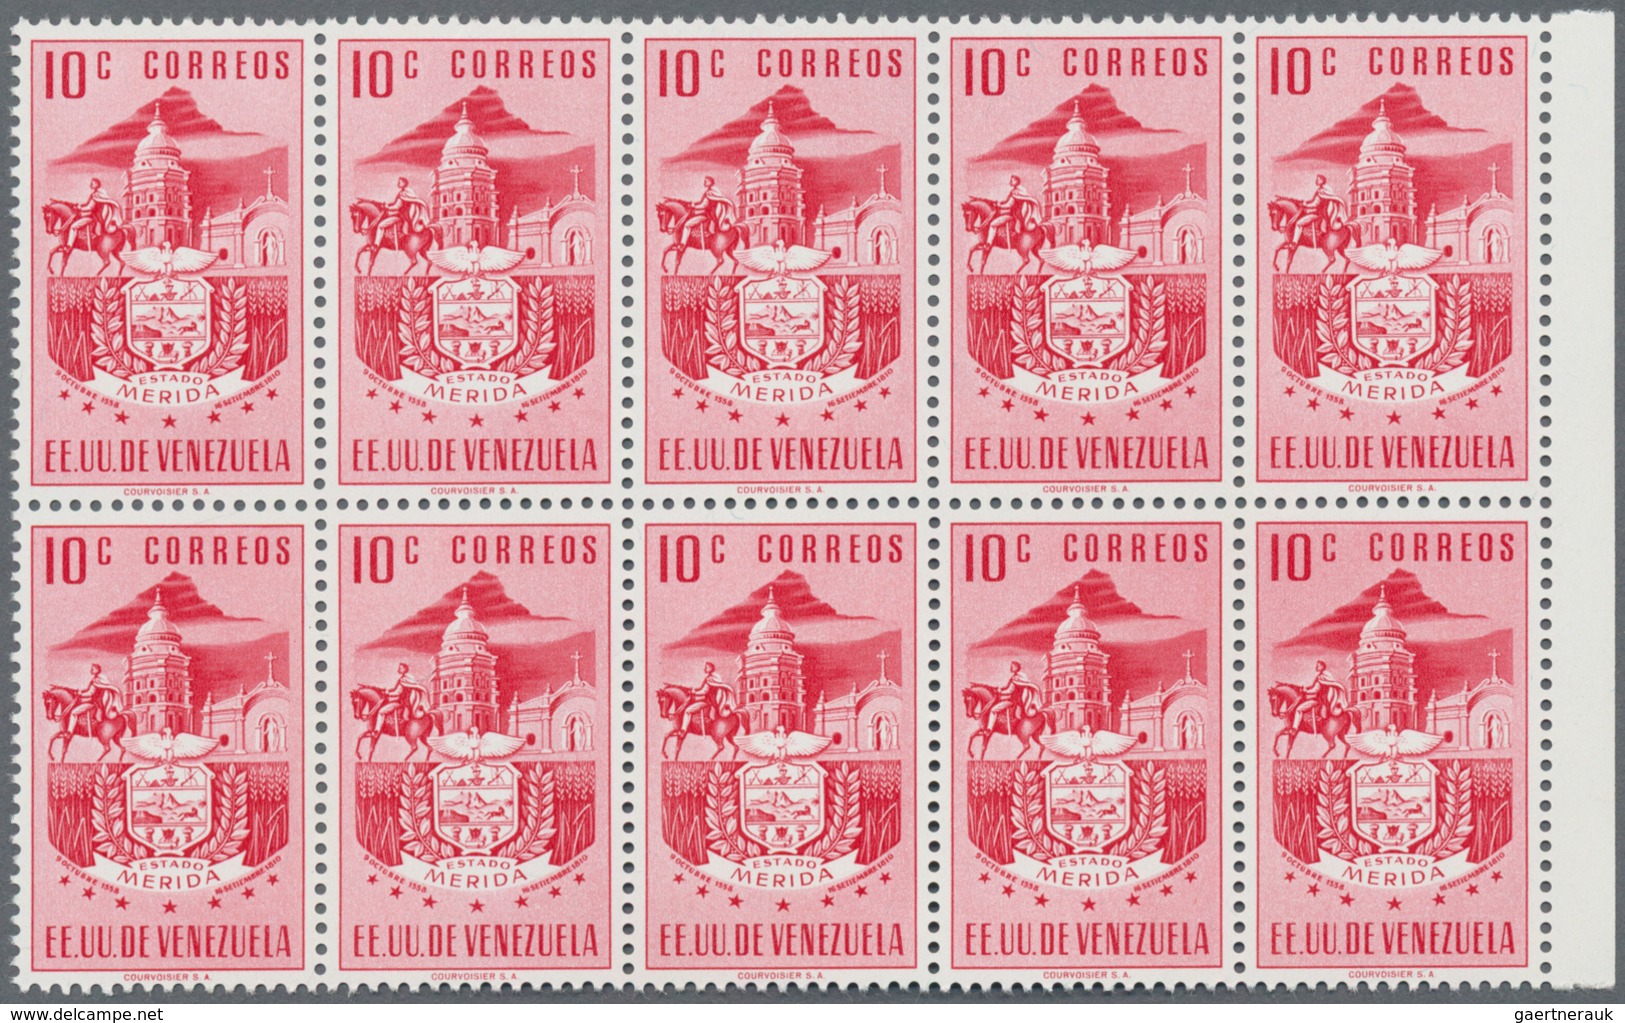 Venezuela: 1953, Coat of Arms 'MERIDA‘ normal stamps complete set of seven in blocks of ten from lef